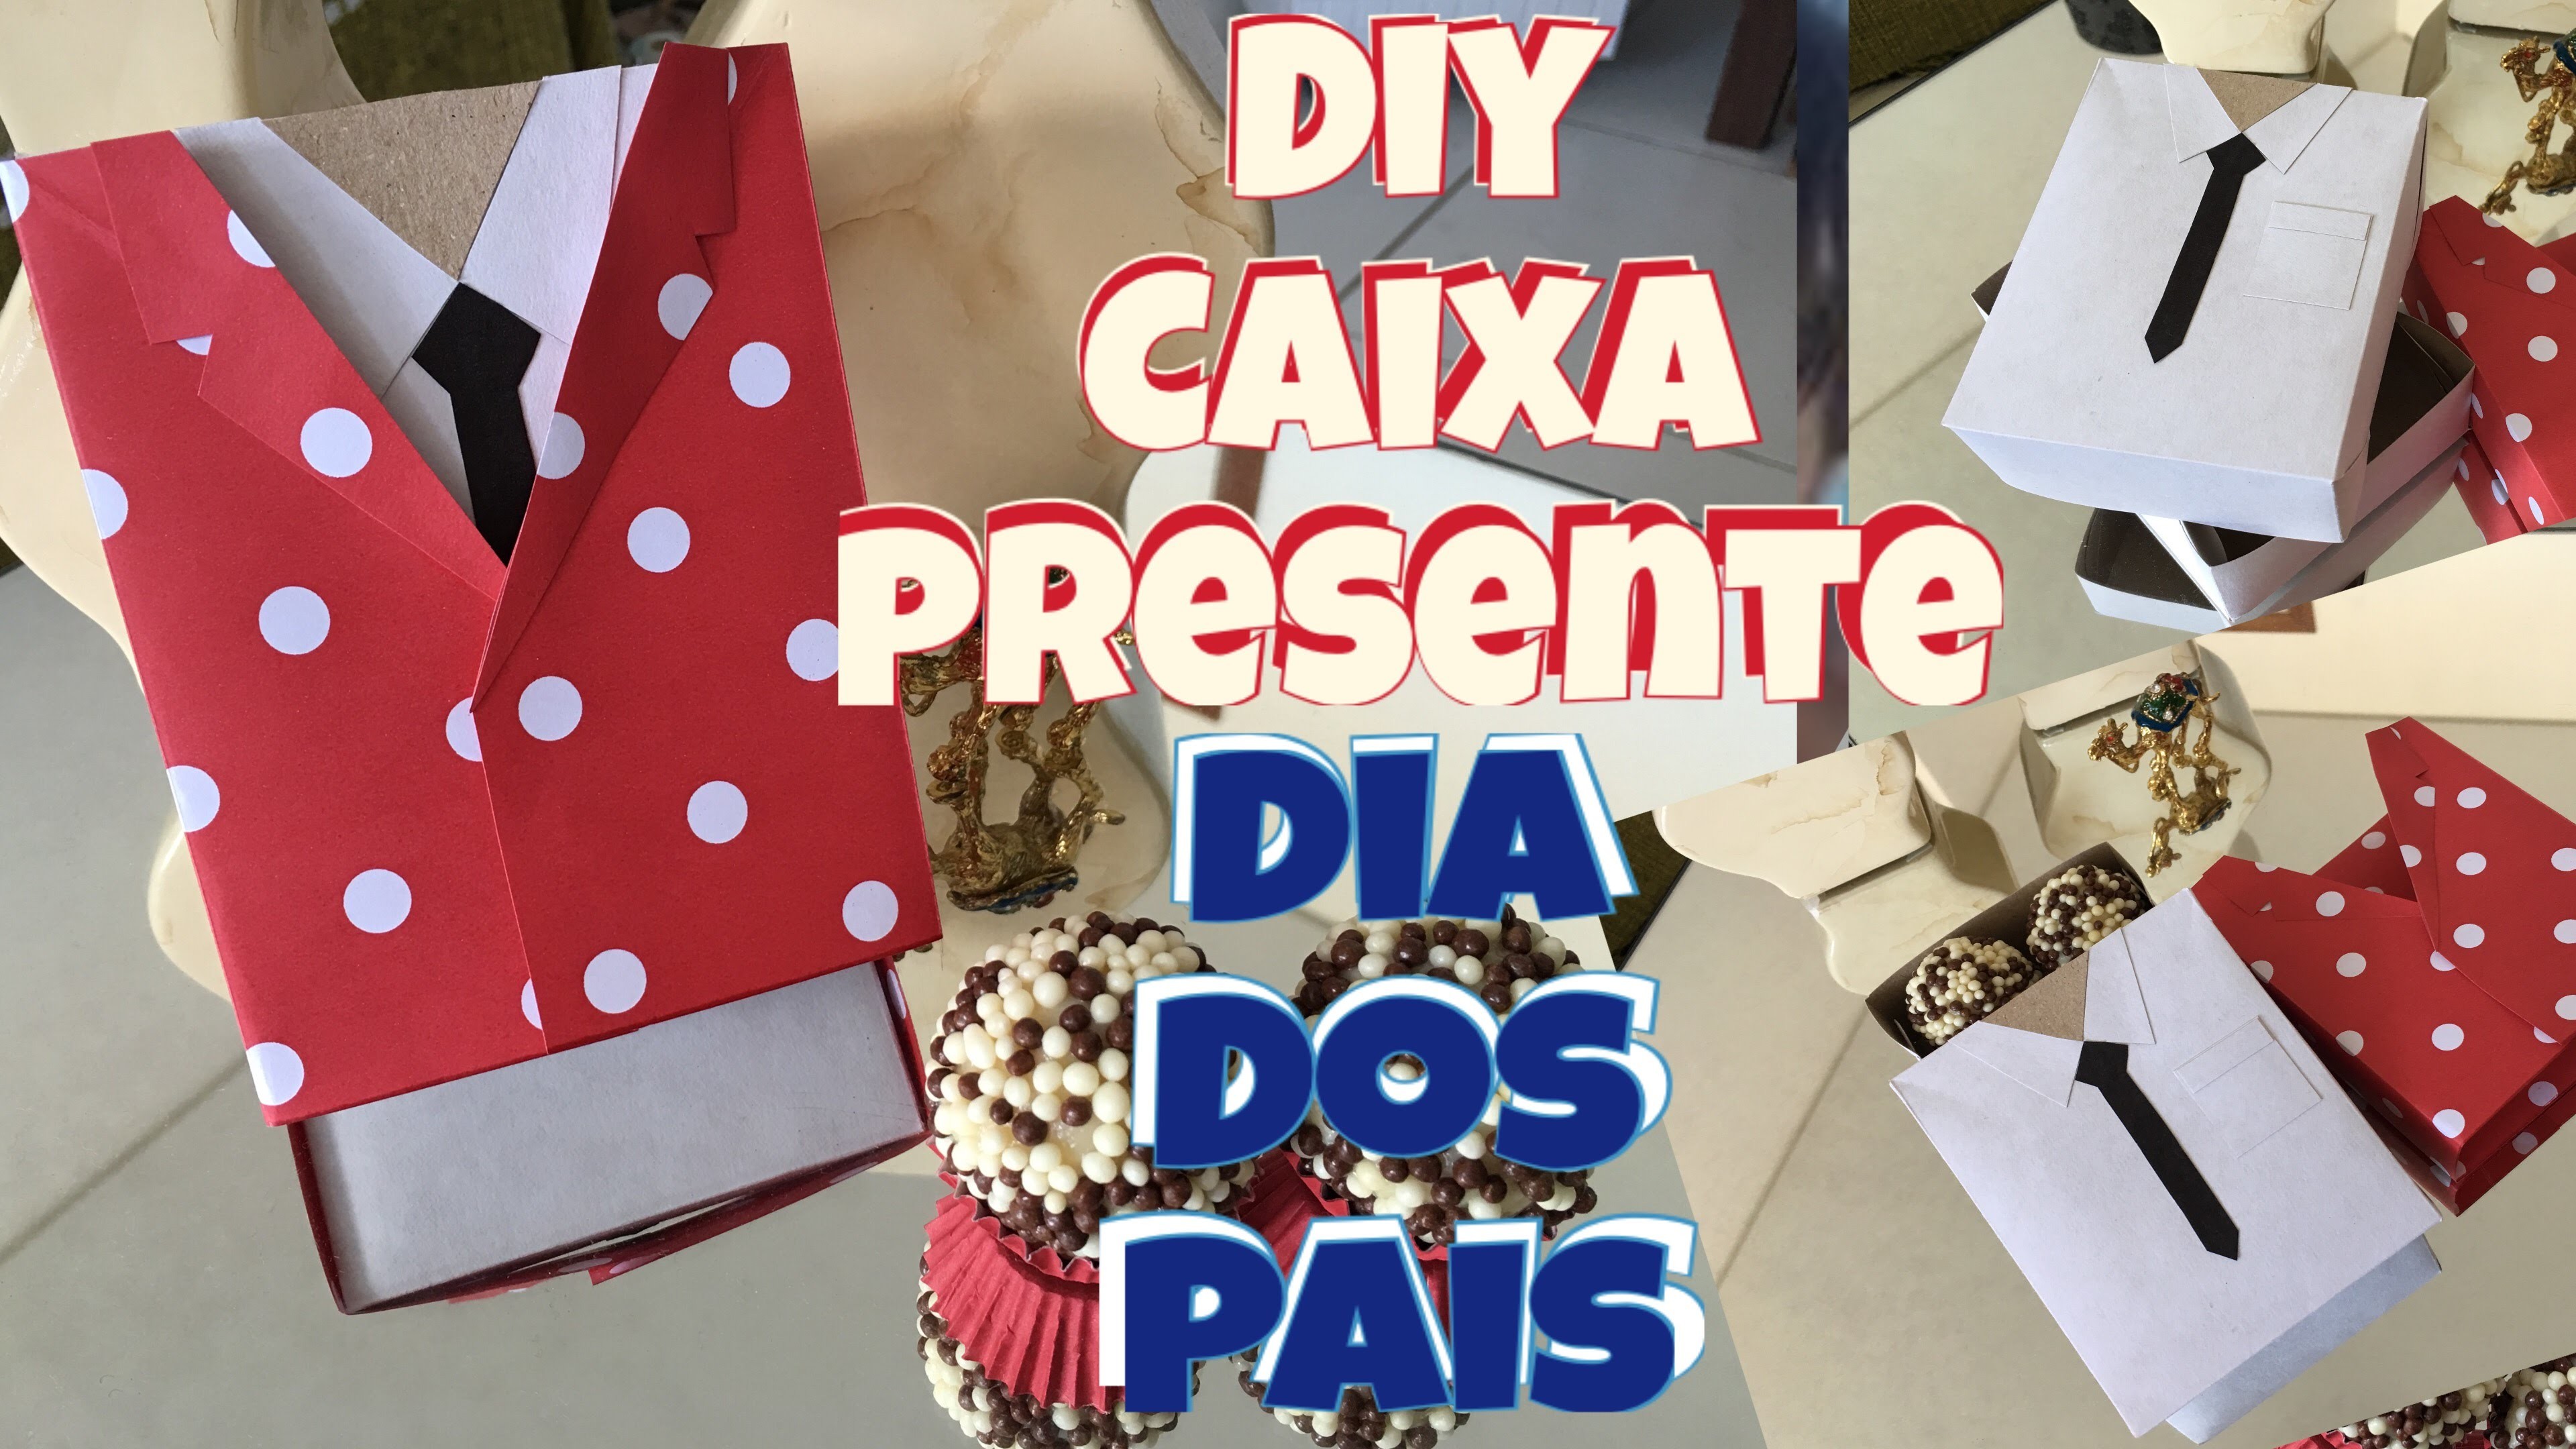 DIY DIA DOS PAIS - CAIXA PERSONALIZADA